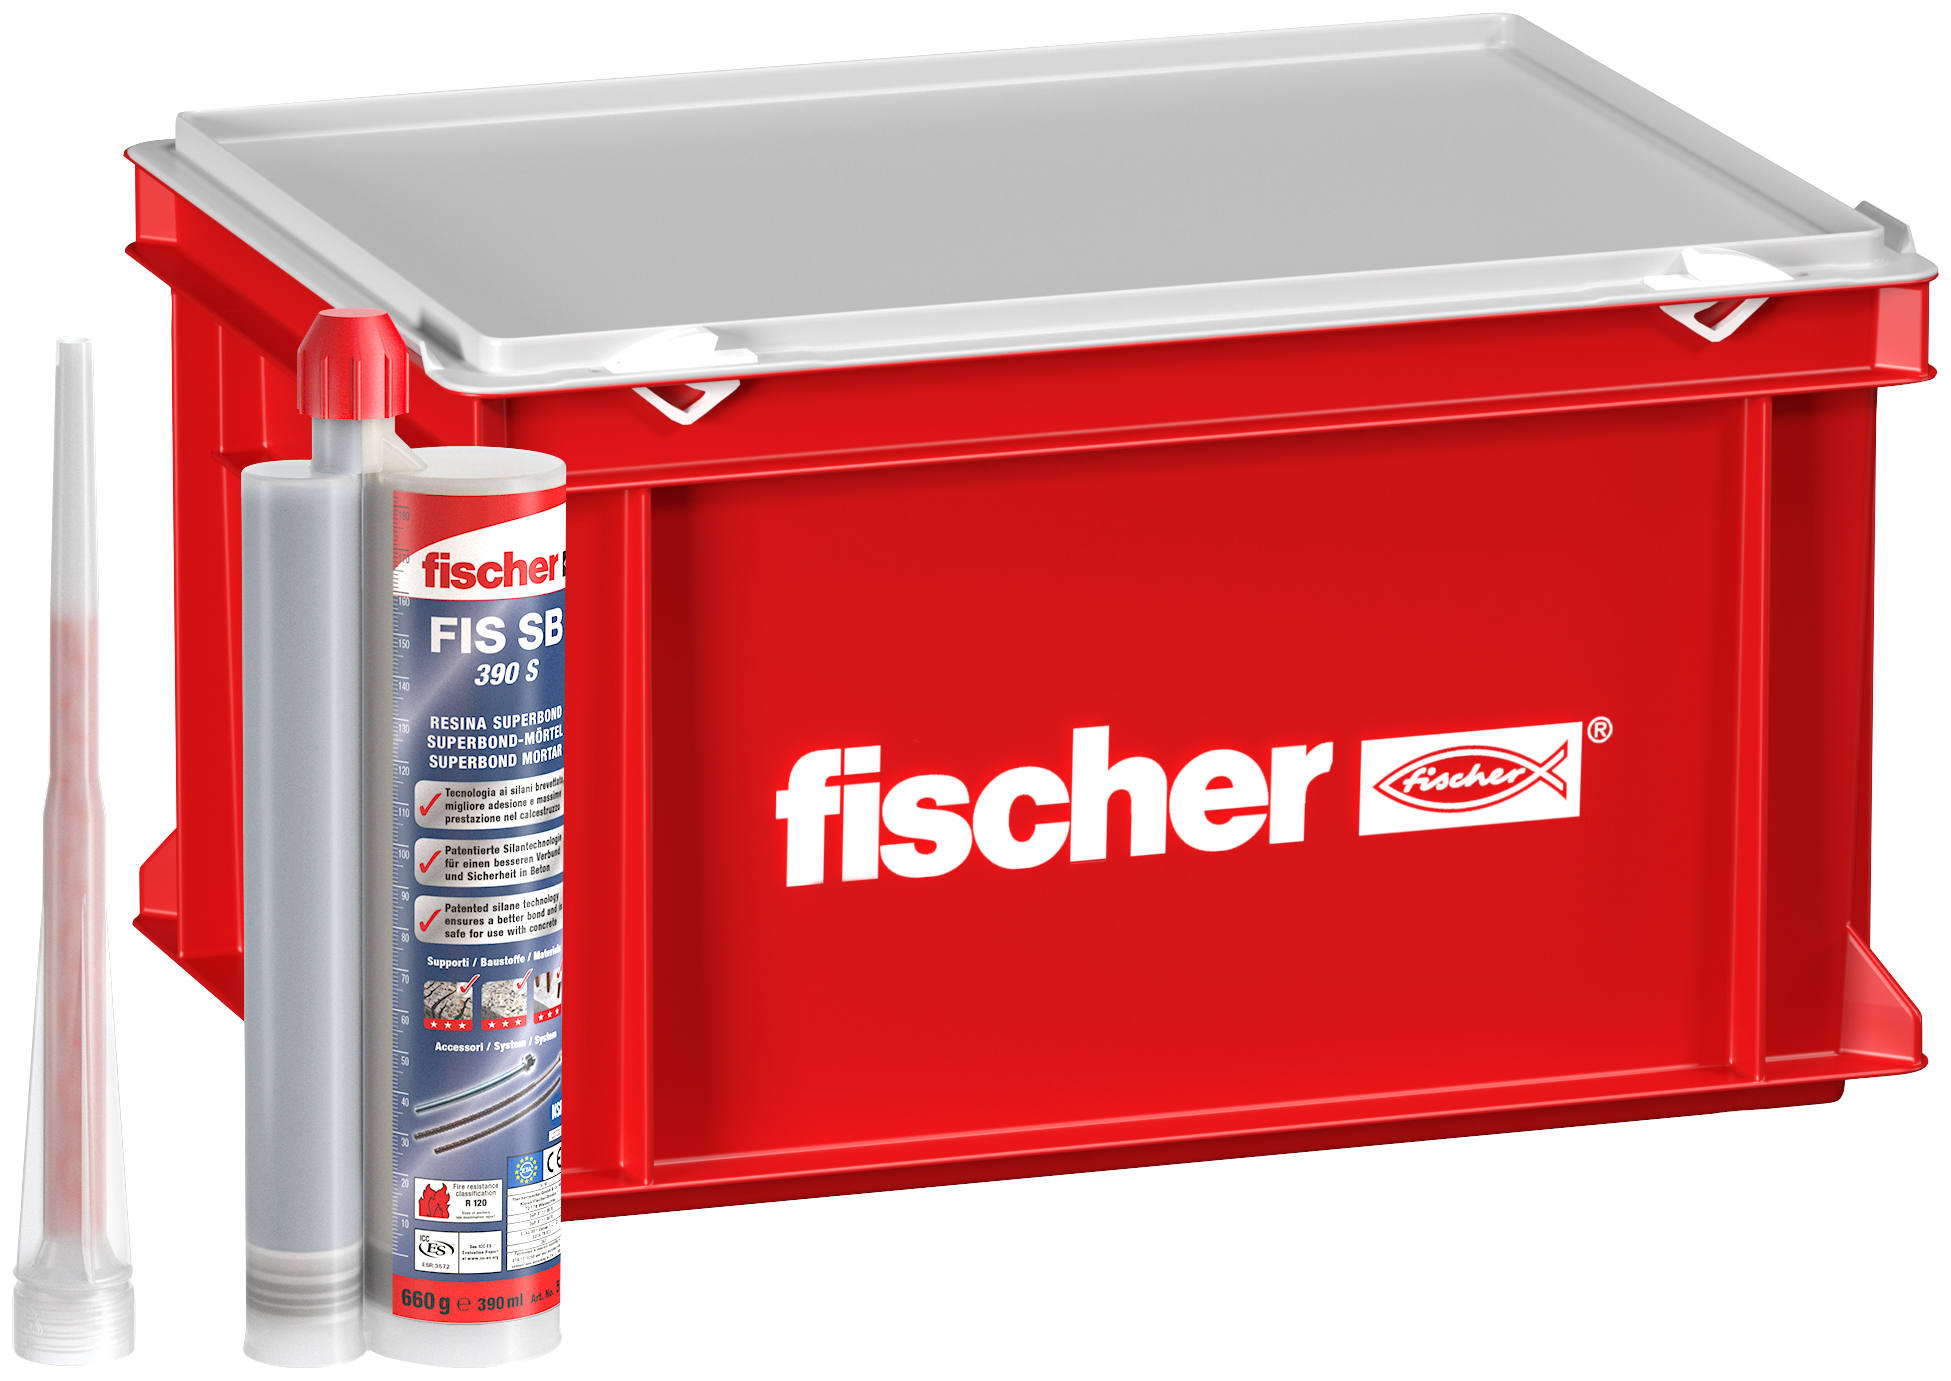 fischer FSB BOX 20 cartucce ancorante chimico FIS SB 390 S (61 Pz.) La resina con tecnologia ai silani per fissaggi in calcestruzzo in ambito sismico categoria C1 e C2 e per riprese di getto, nel pratico box.